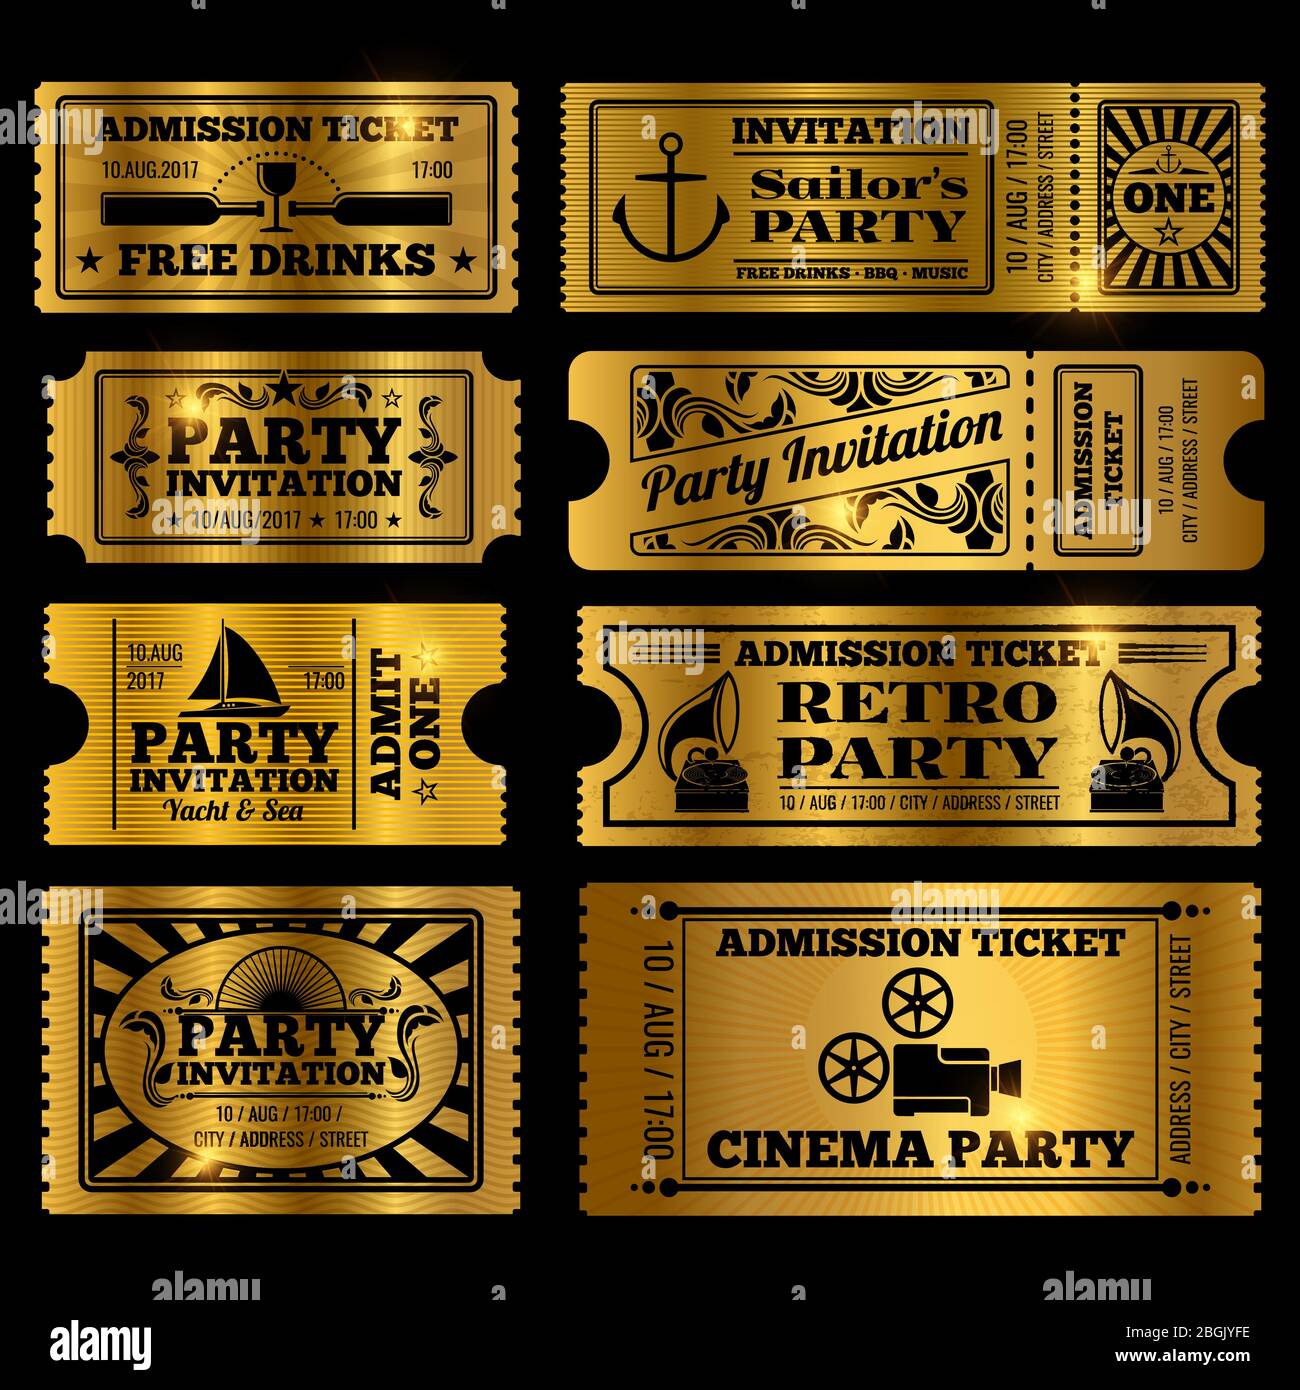 Retro Party, Kino, Einladung Vektor-Tickets Set. Vektor goldene Tickets isoliert auf schwarzem Hintergrund Illustration Stock Vektor